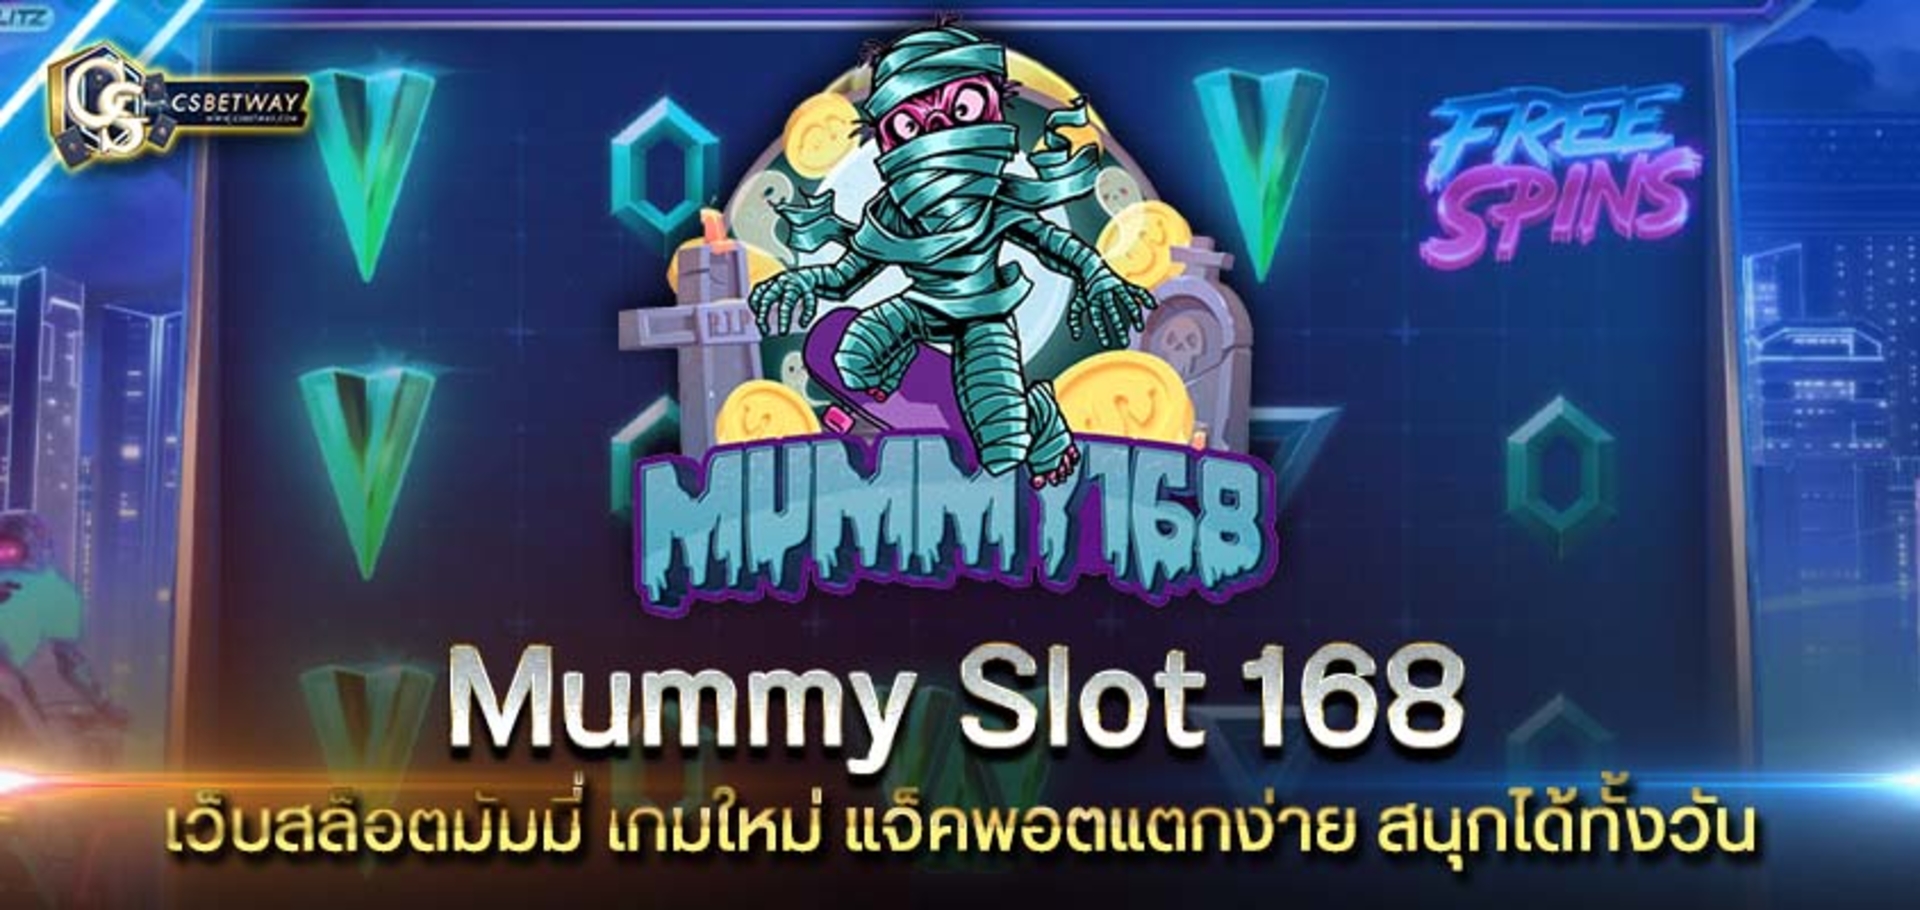 mummy slot 168 เว็บสล็อตมัมมี่ เกมใหม่ แจ็คพอตแตกง่าย สนุกได้ทั้งวัน